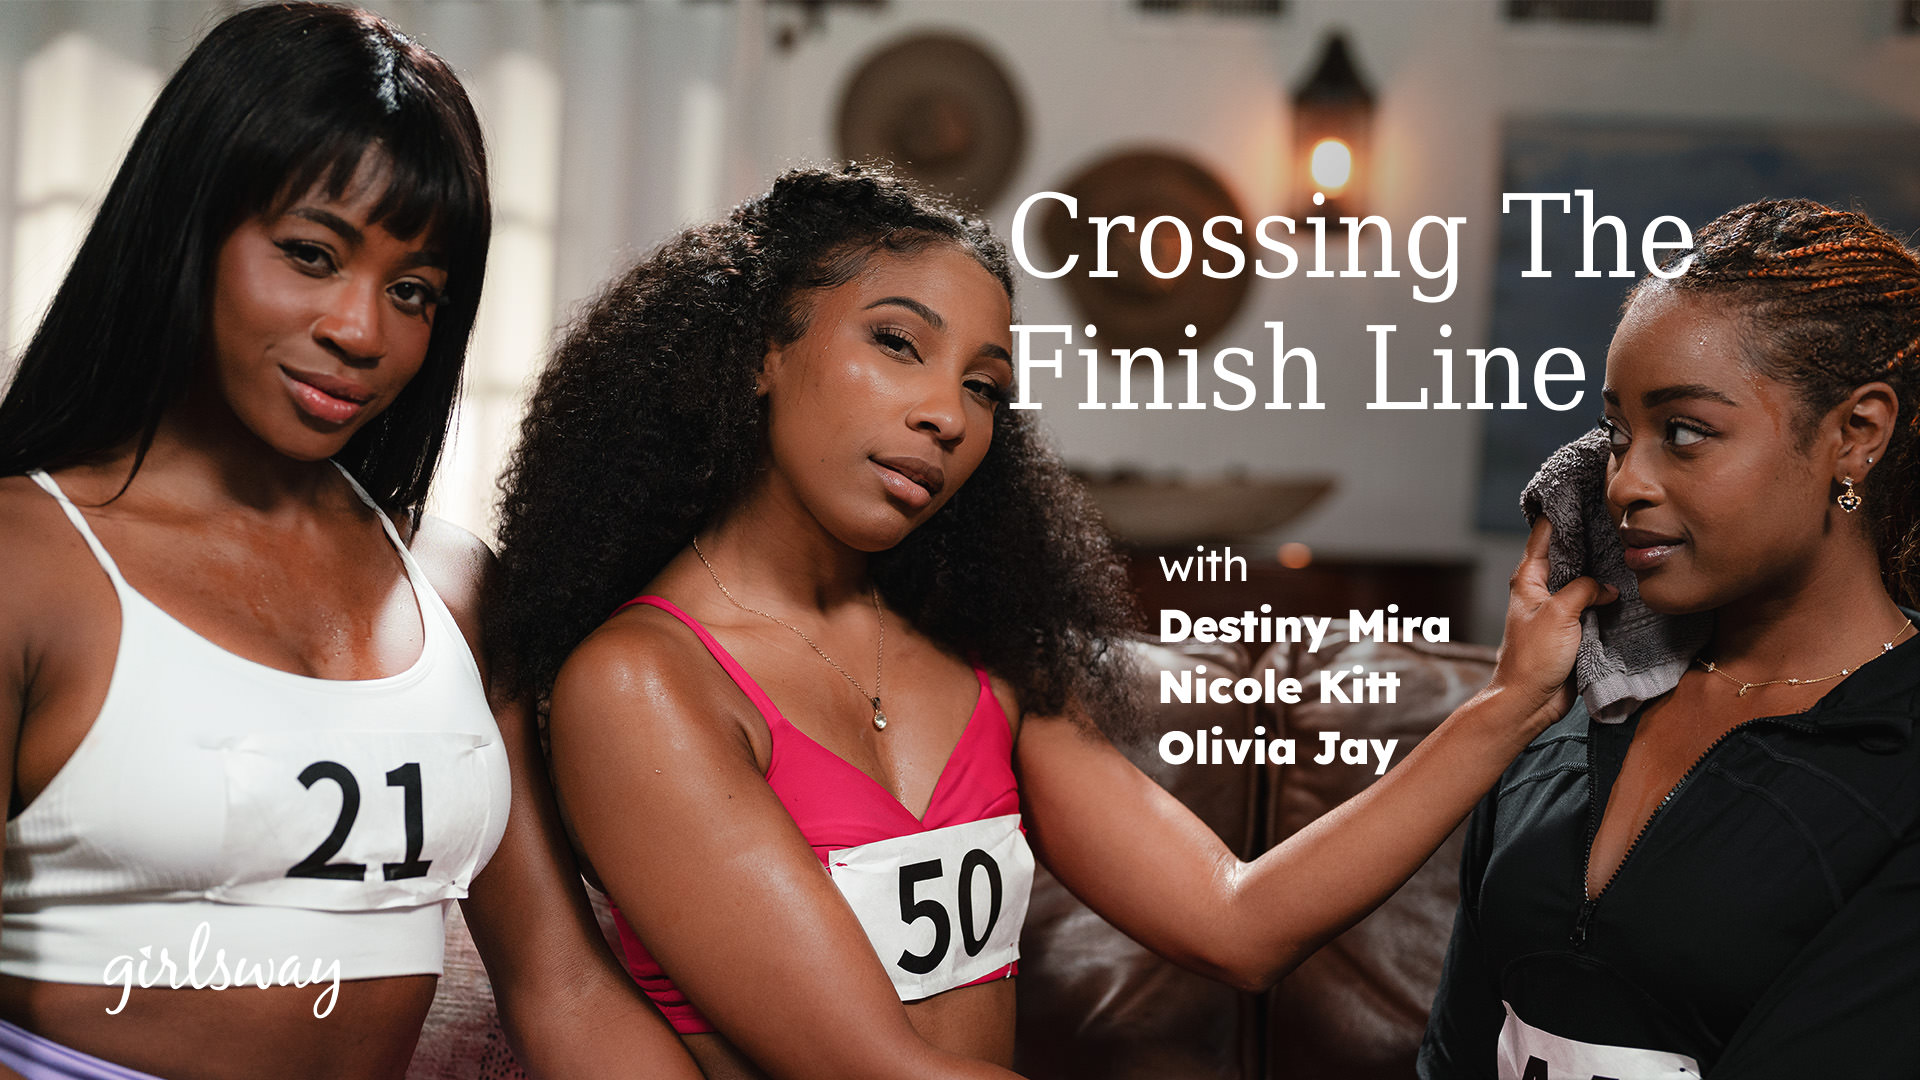 Nicole Kitt, Destiny Mira, Olivia Jay “Crossing The Finish Line” GirlsWay